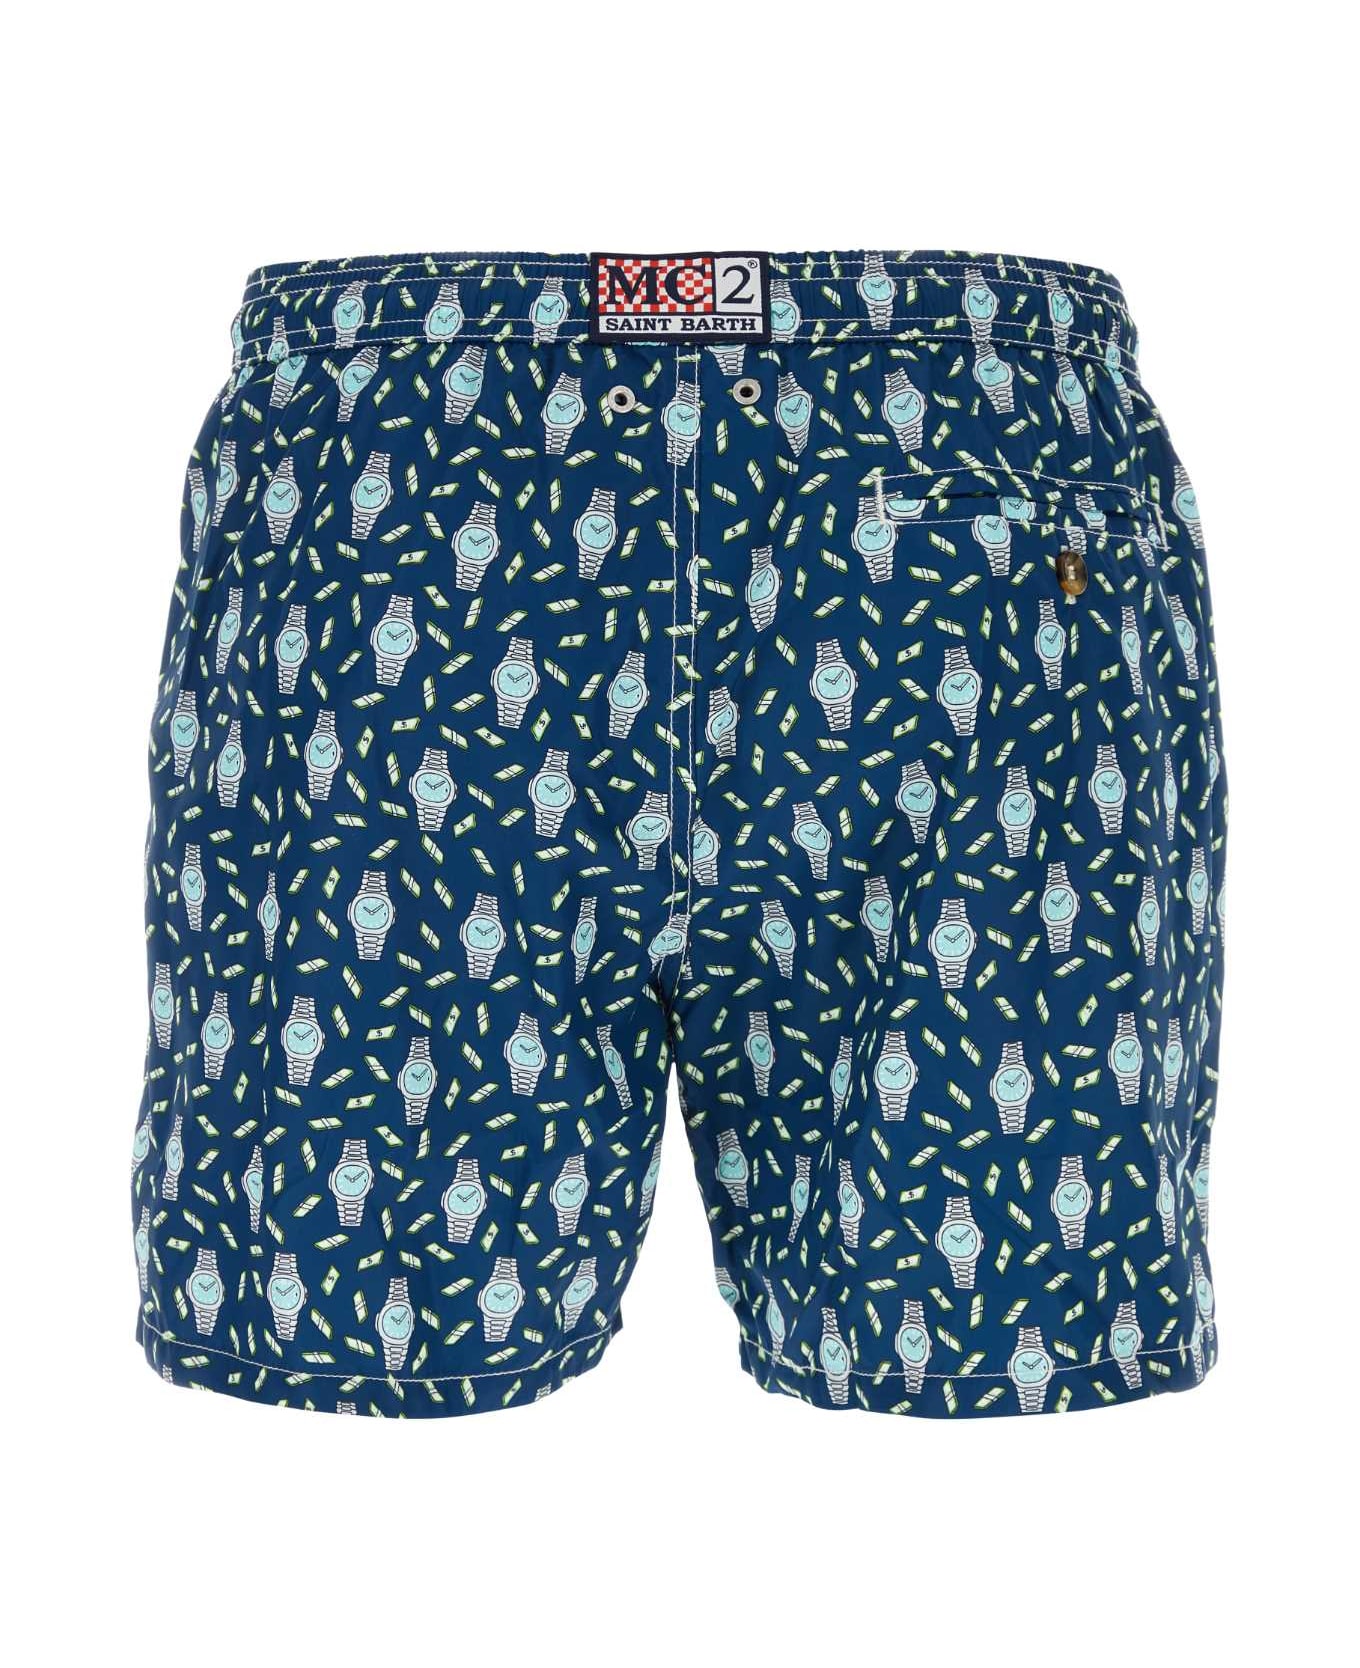 MC2 Saint Barth Printed Polyester Swimming Shorts - 6156